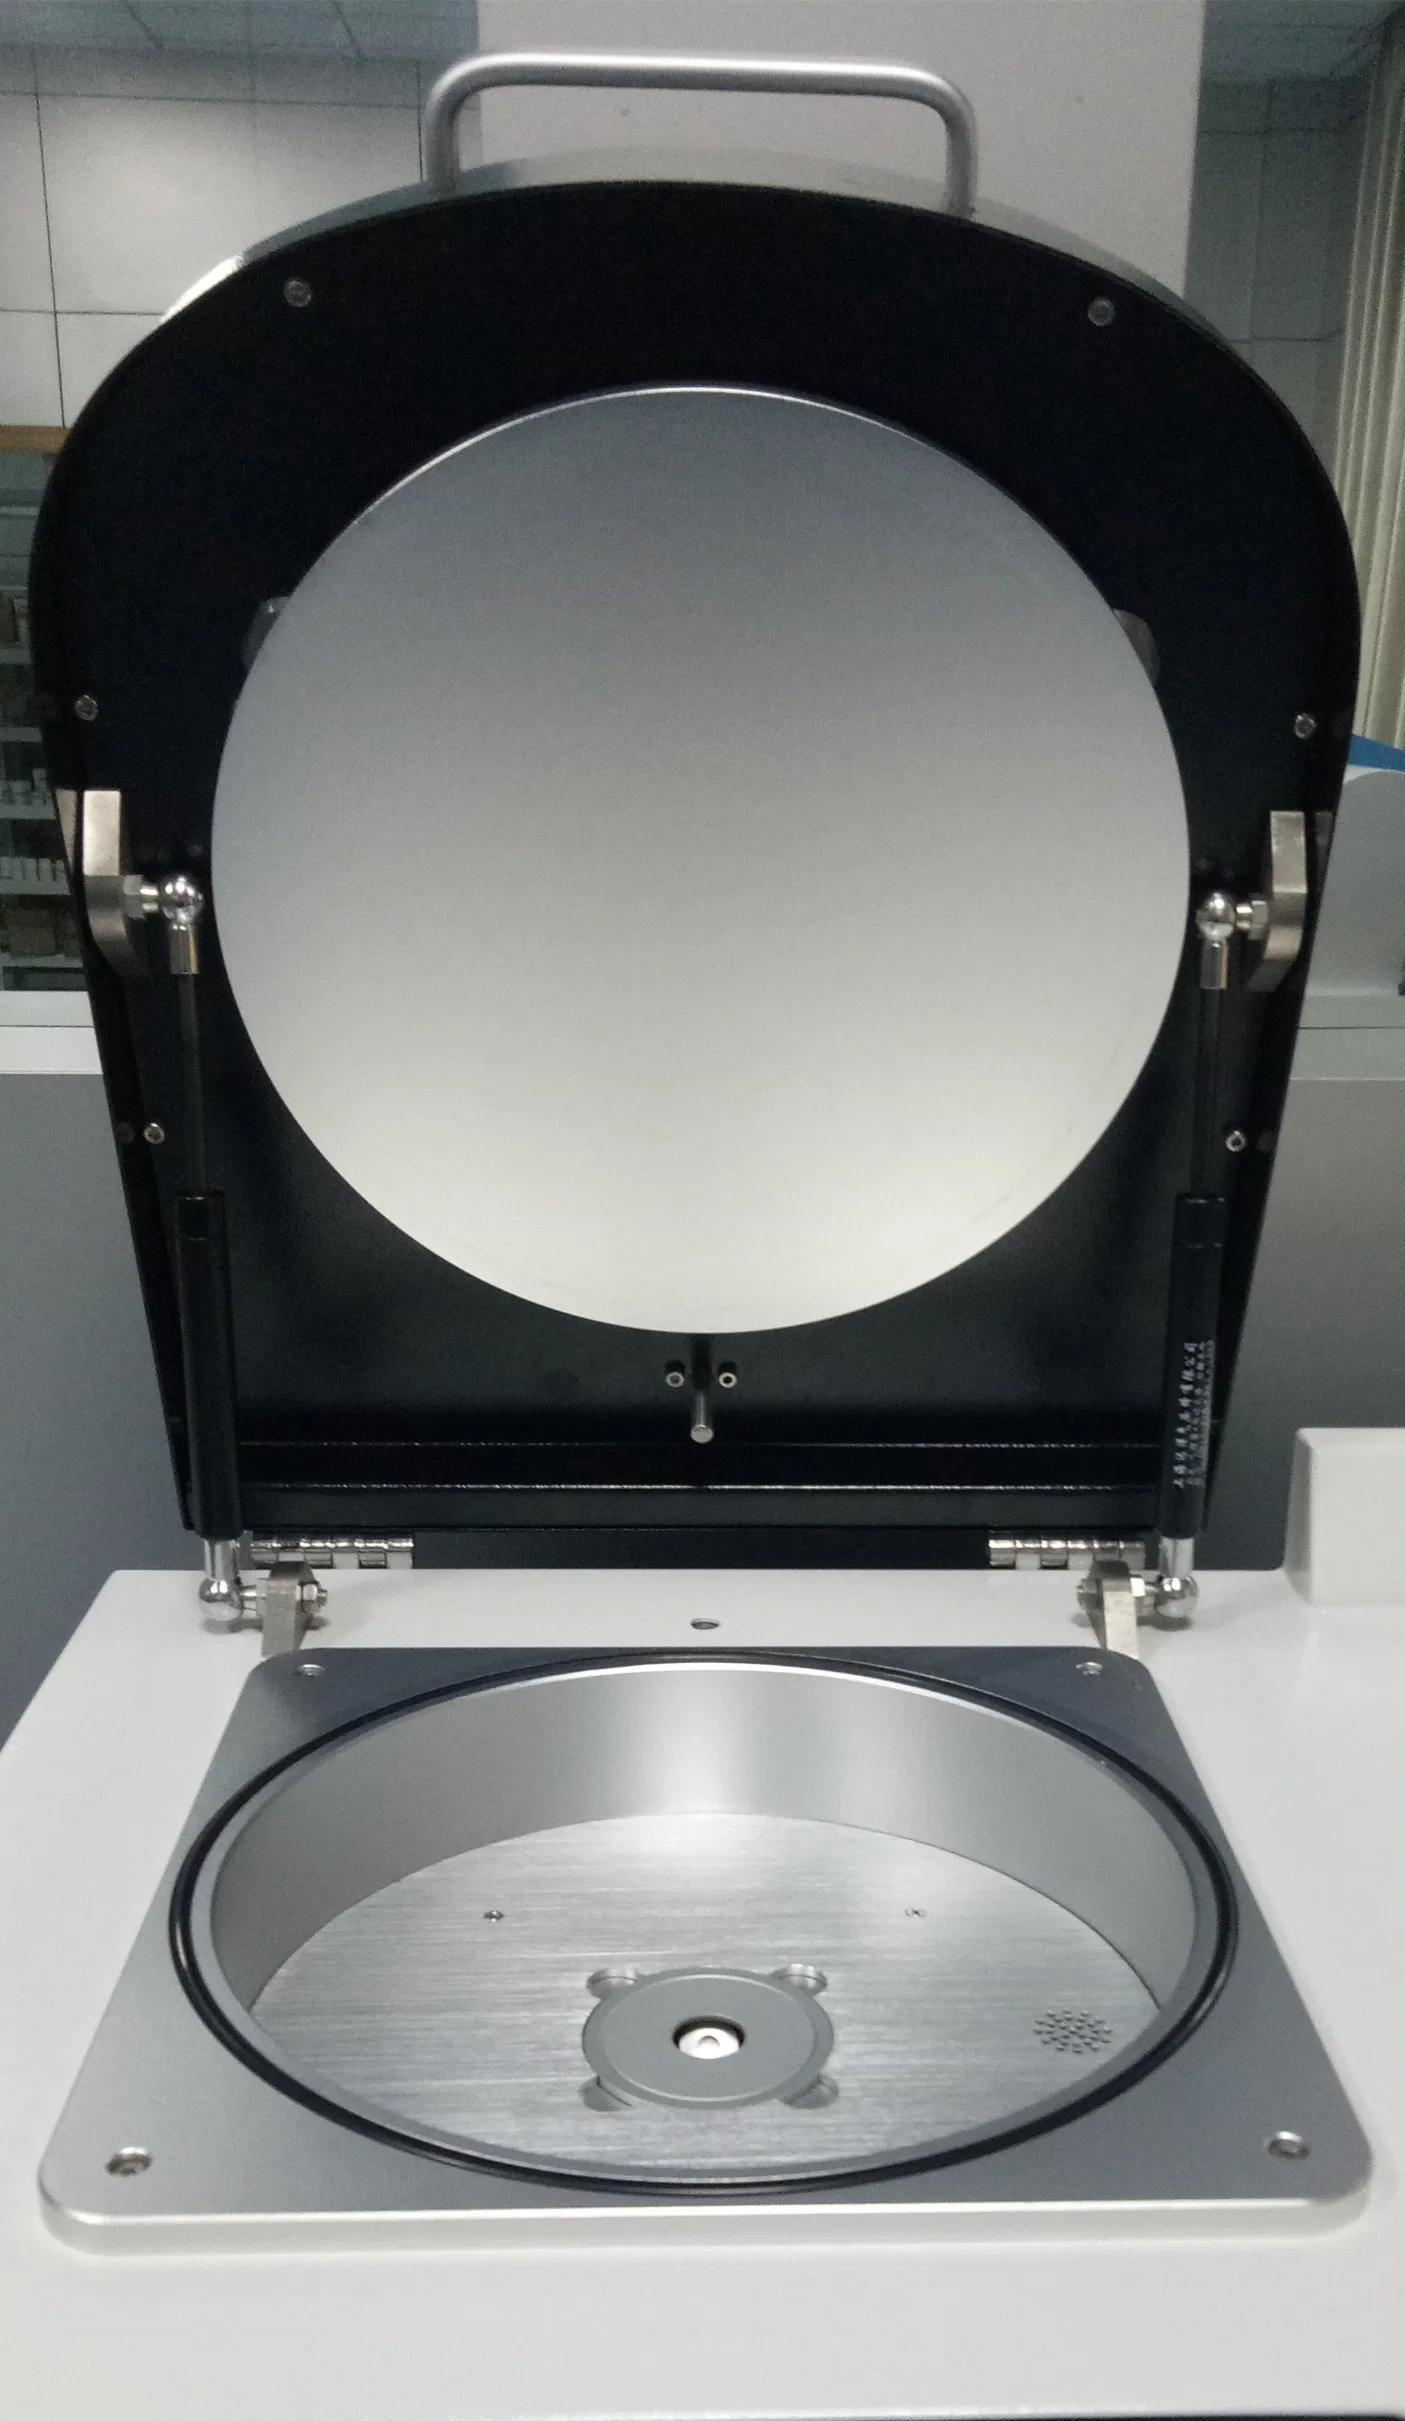 مقياس الطيف الفلوري بالأشعة السينية لللوي والتعدين